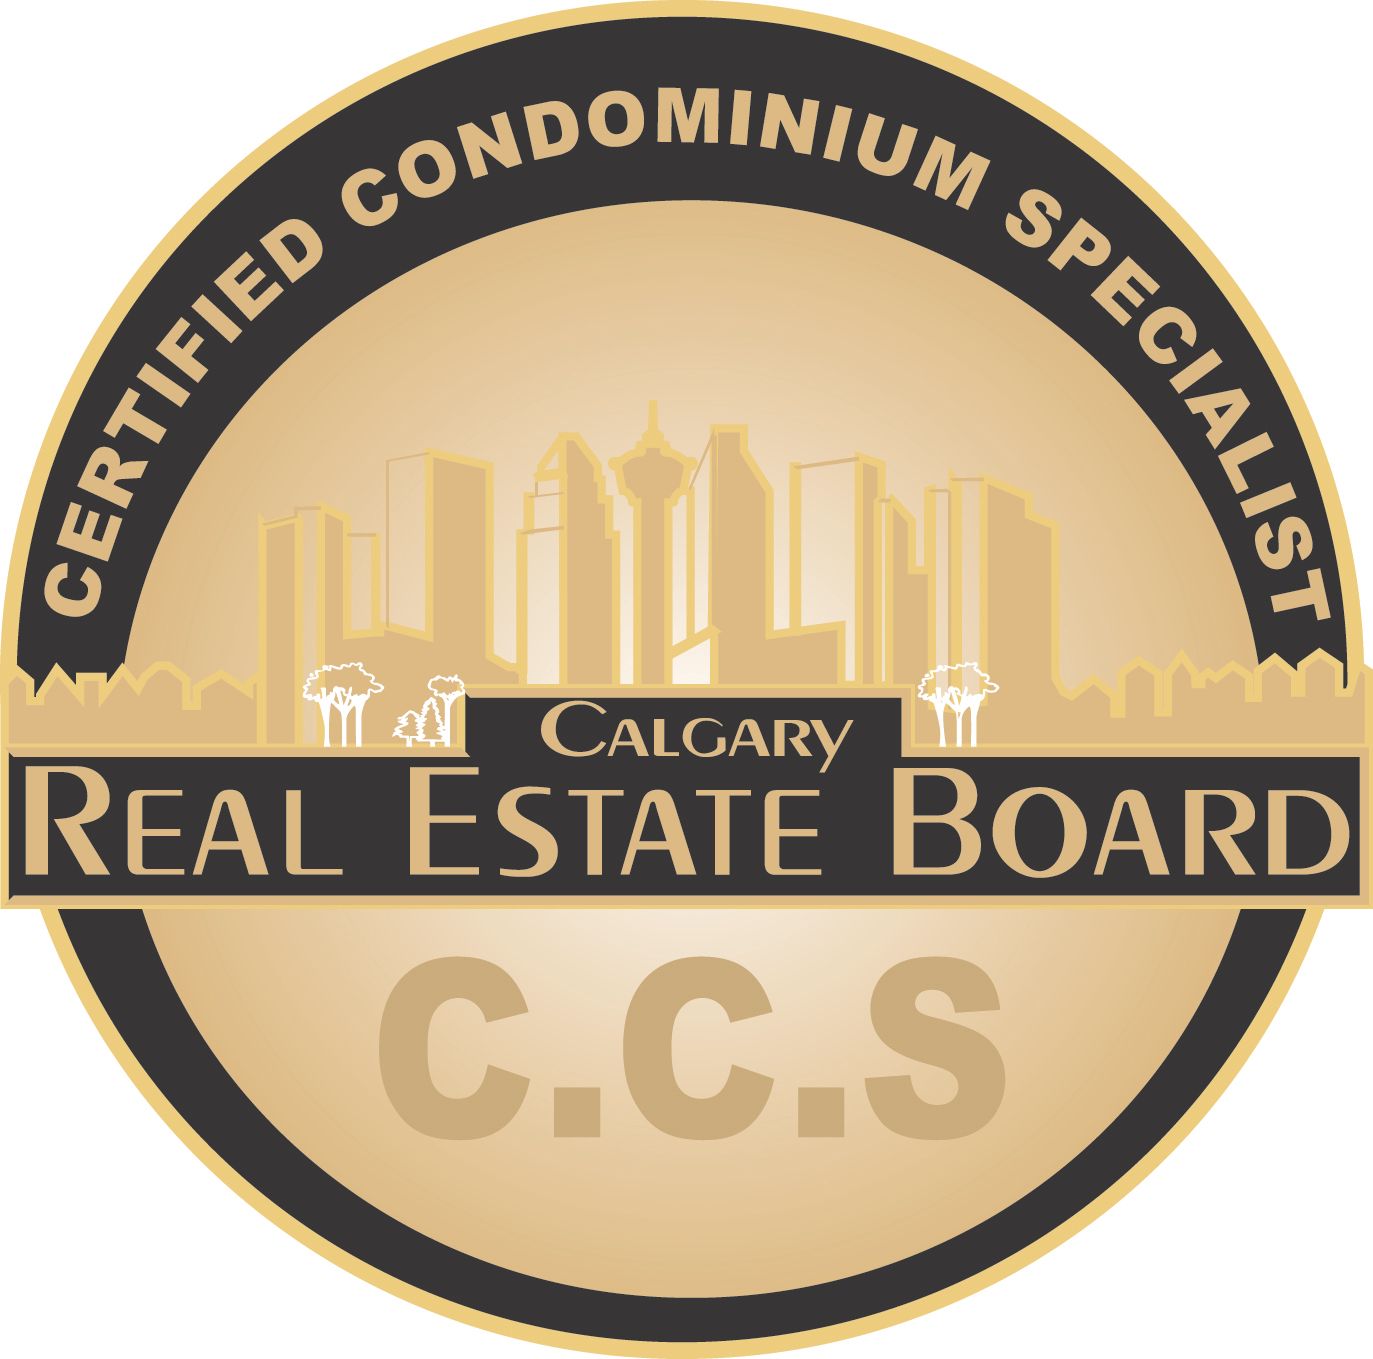 Certified Condominium Specialist in Calgary, Alberta Real Estate